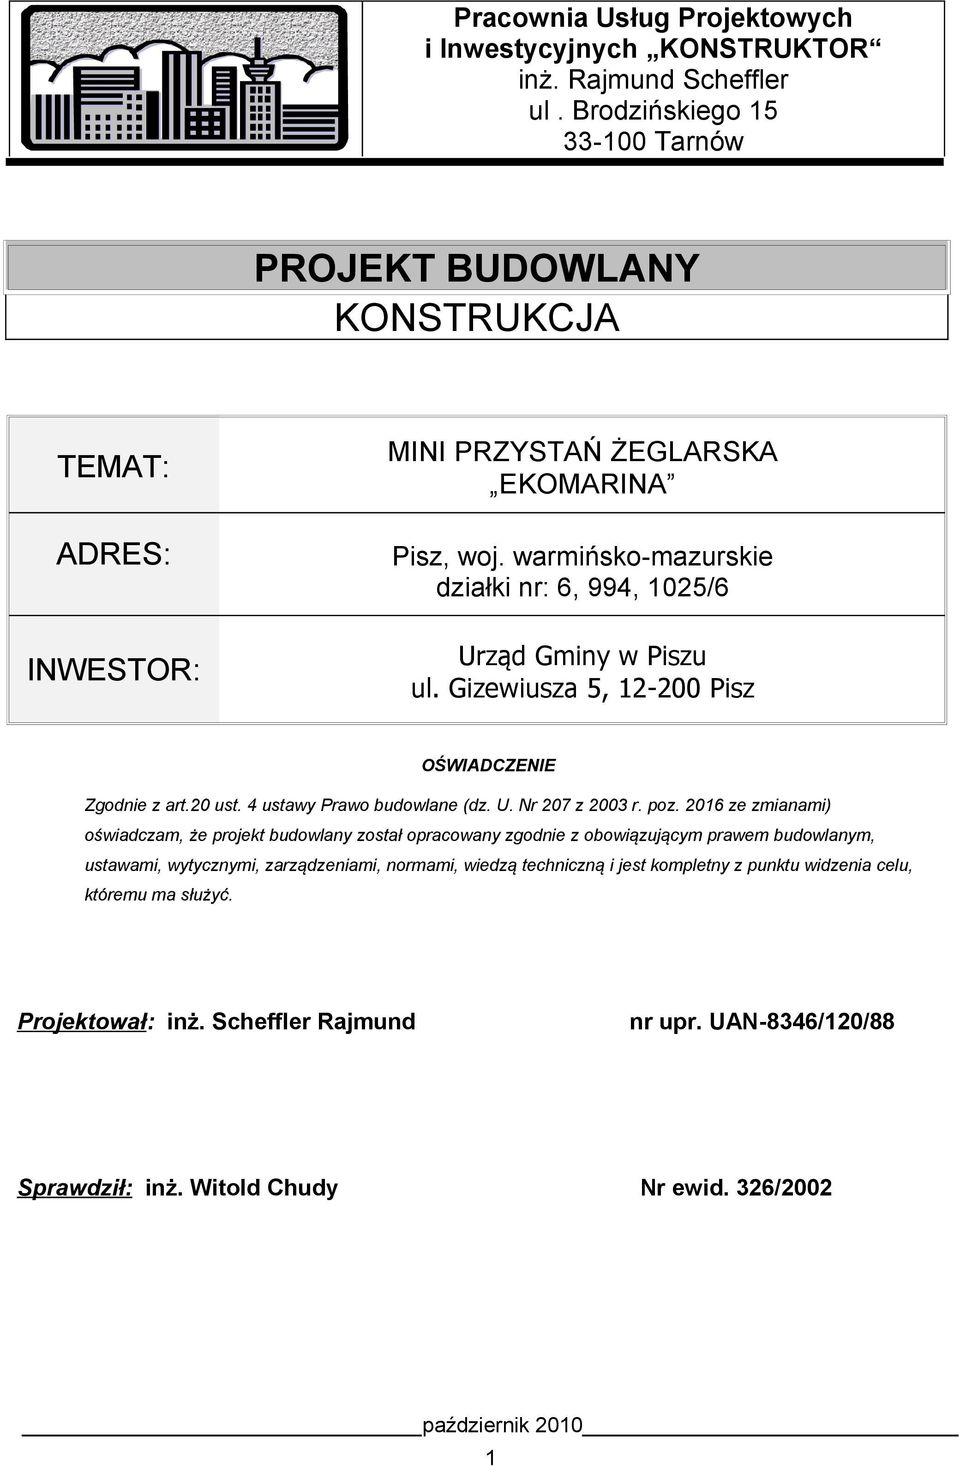 warmińsko-mazurskie działki nr: 6, 994, 1025/6 Urząd Gminy w Piszu ul. Gizewiusza 5, 12-200 Pisz OŚWIADCZENIE Zgodnie z art.20 ust. 4 ustawy Prawo budowlane (dz. U. Nr 207 z 2003 r. poz.